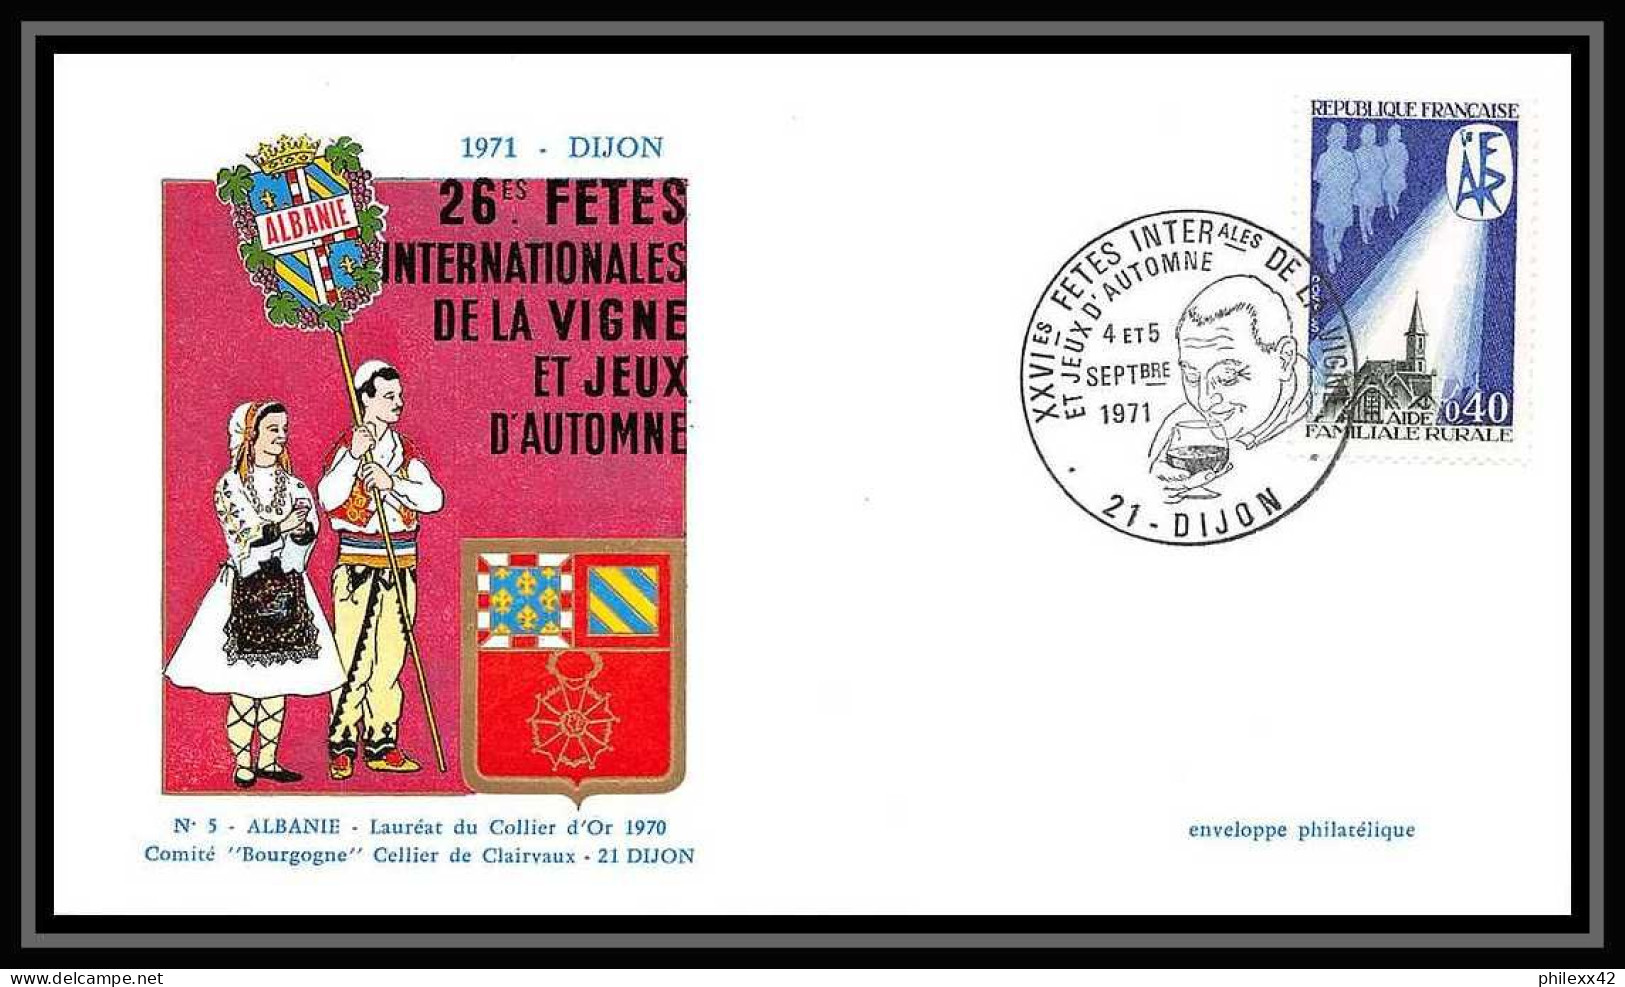 2580/ Carte maximum (card) France lot de 4 documents différents N°1682 Aide familiale rurale. Eglise 